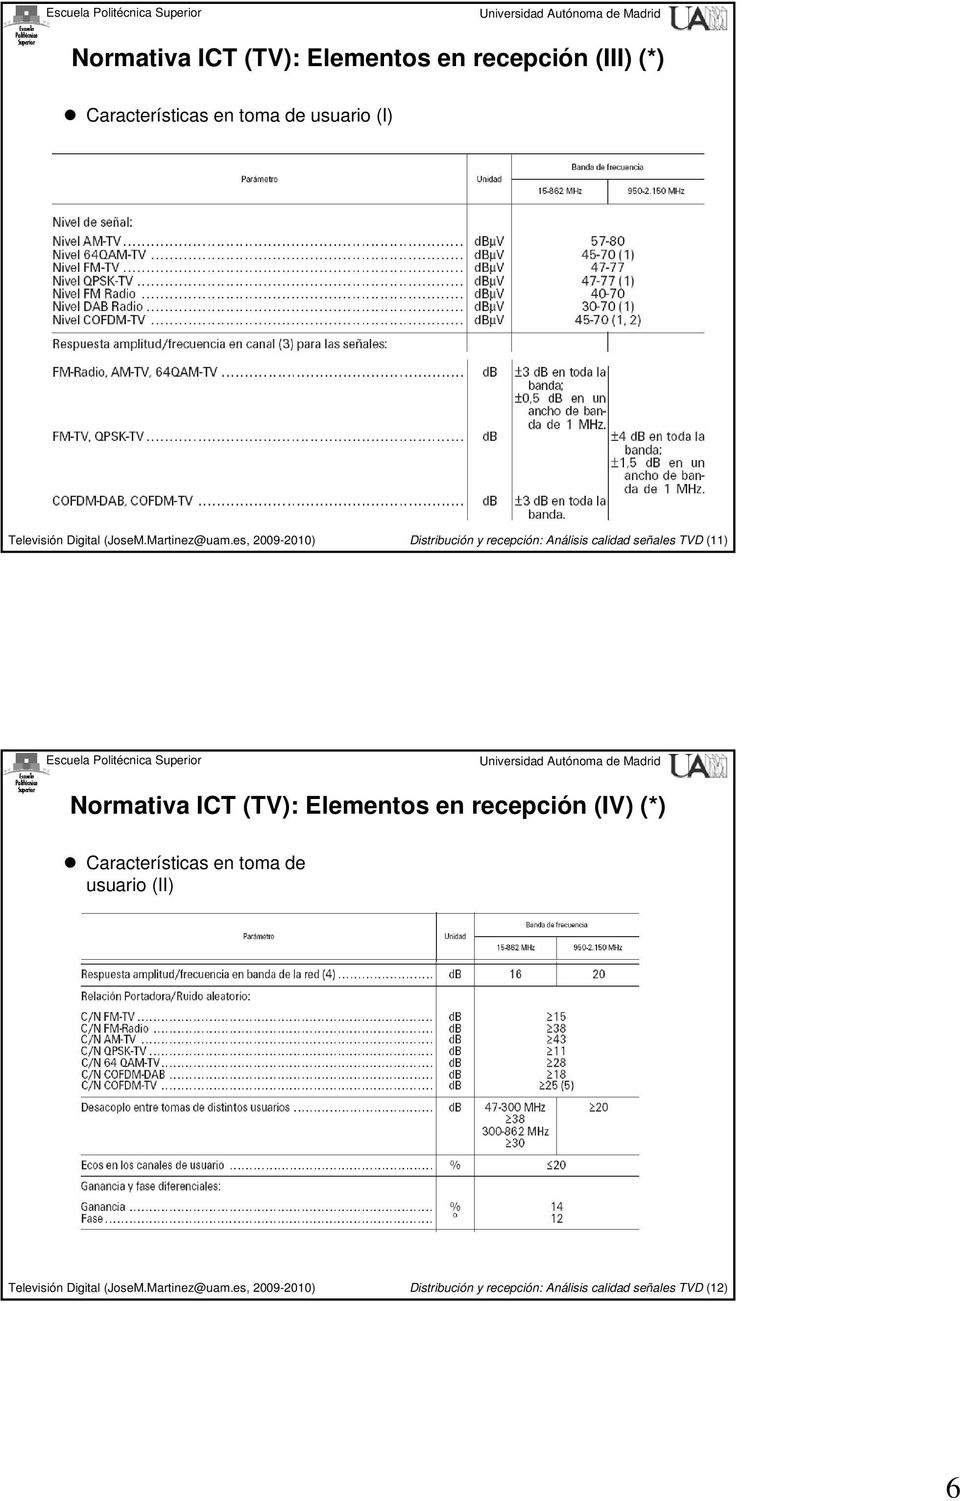 Normativa ICT (TV): Elementos en recepción (IV) (*) Características en toma